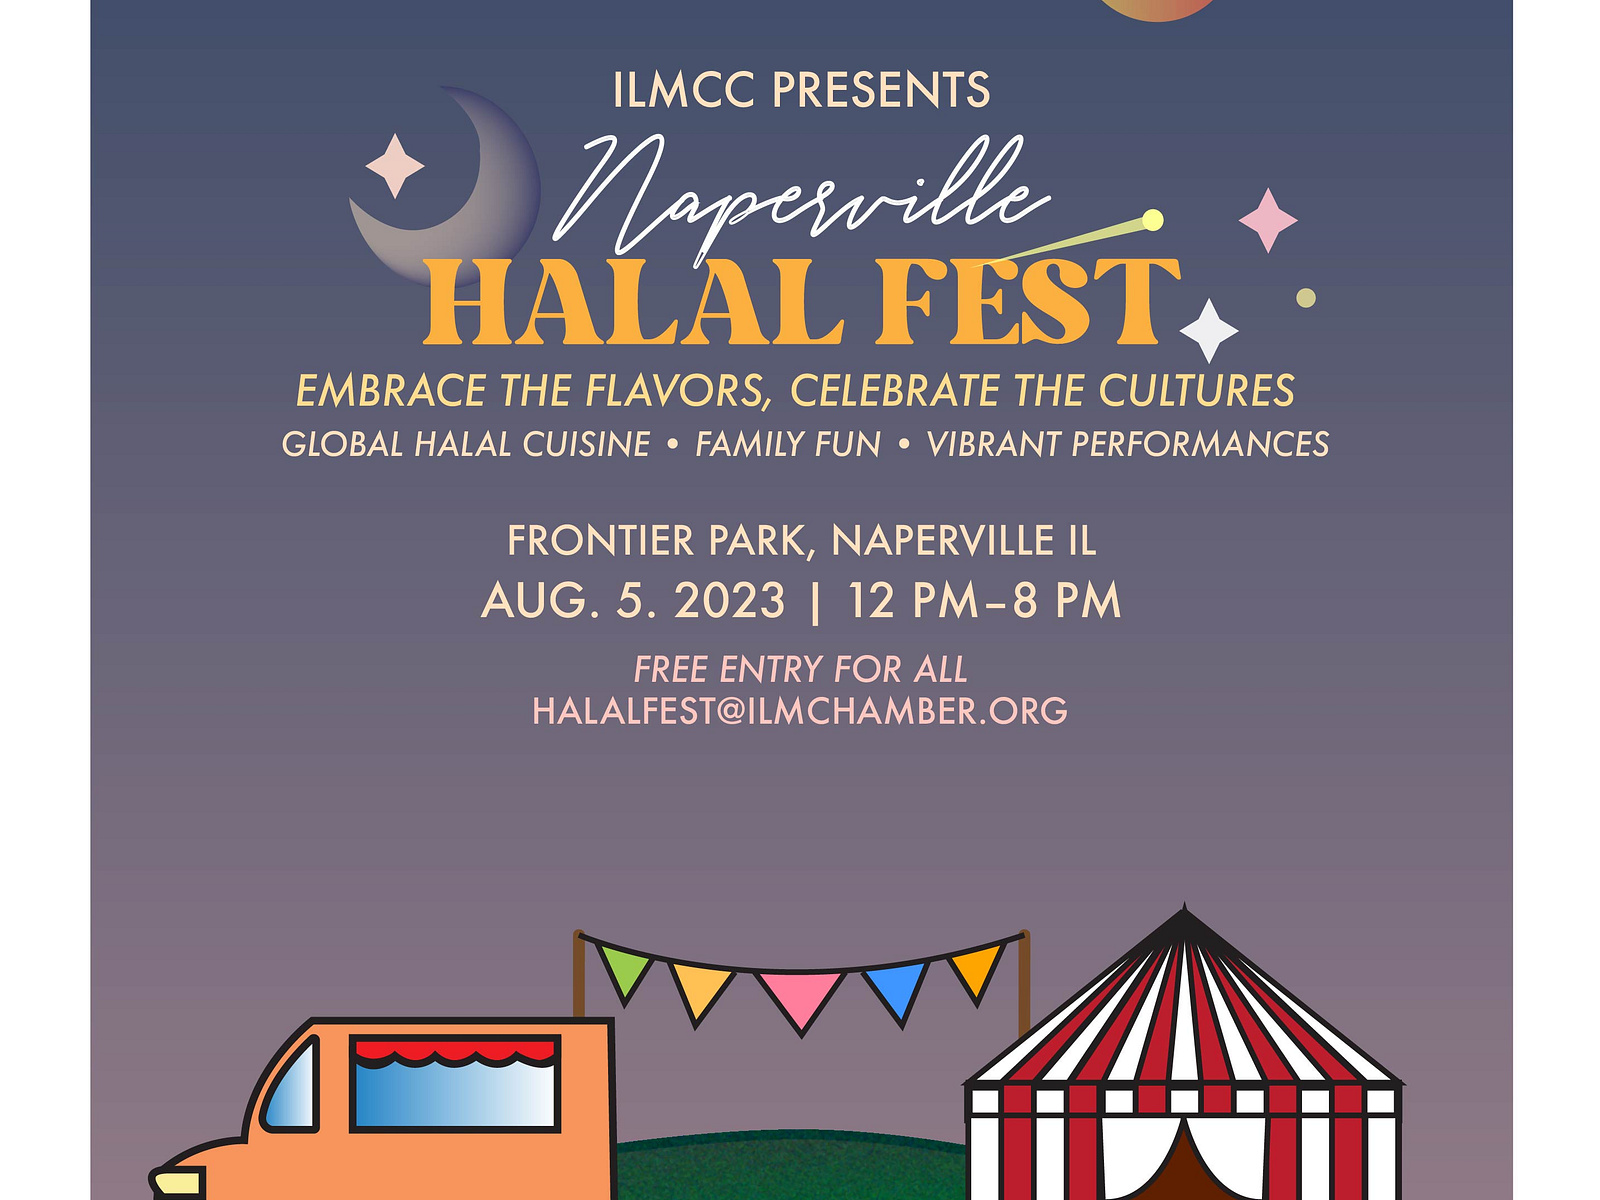 Halal Fest 2023 Flier by Daria Shafeek on Dribbble